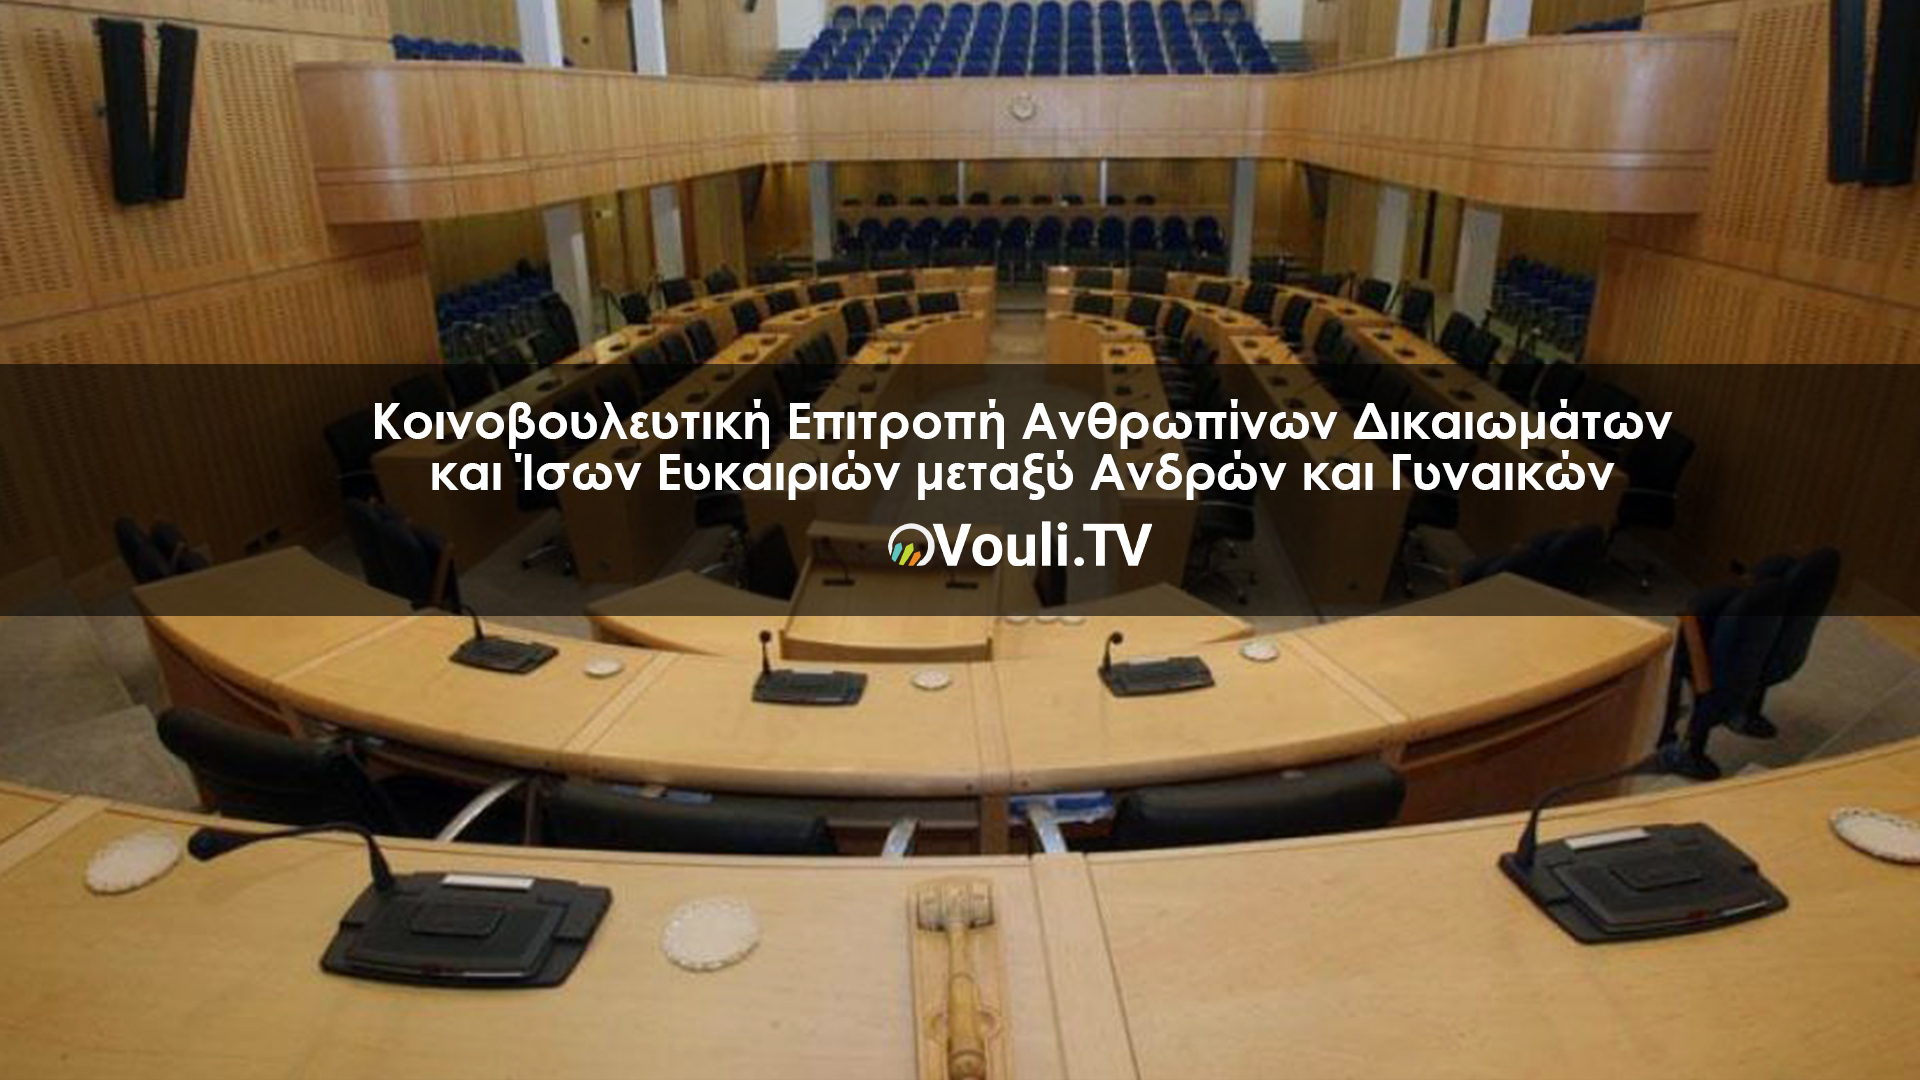 Κοινοβουλευτική Επιτροπή Ανθρωπίνων Δικαιωμάτων και Ίσων Ευκαιριών μεταξύ Ανδρών και Γυναικών | Vouli report 04/04/2022